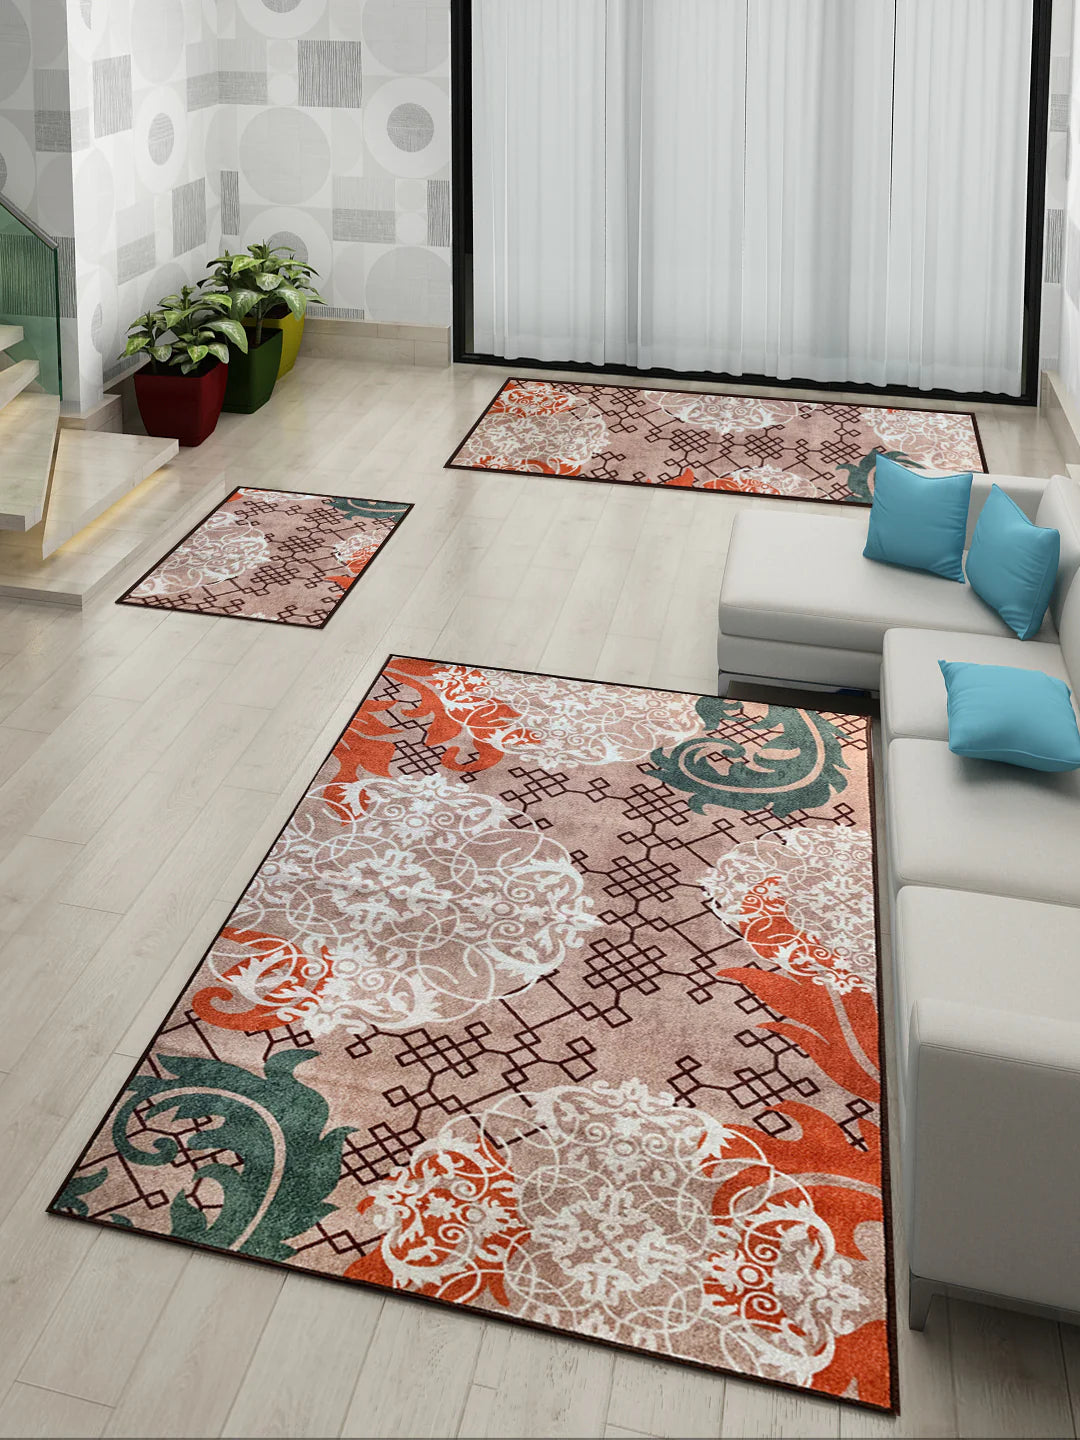 Athom Living Aristrocrat Premium Anti Slip Printed Doormat, Runner & Carpet Set